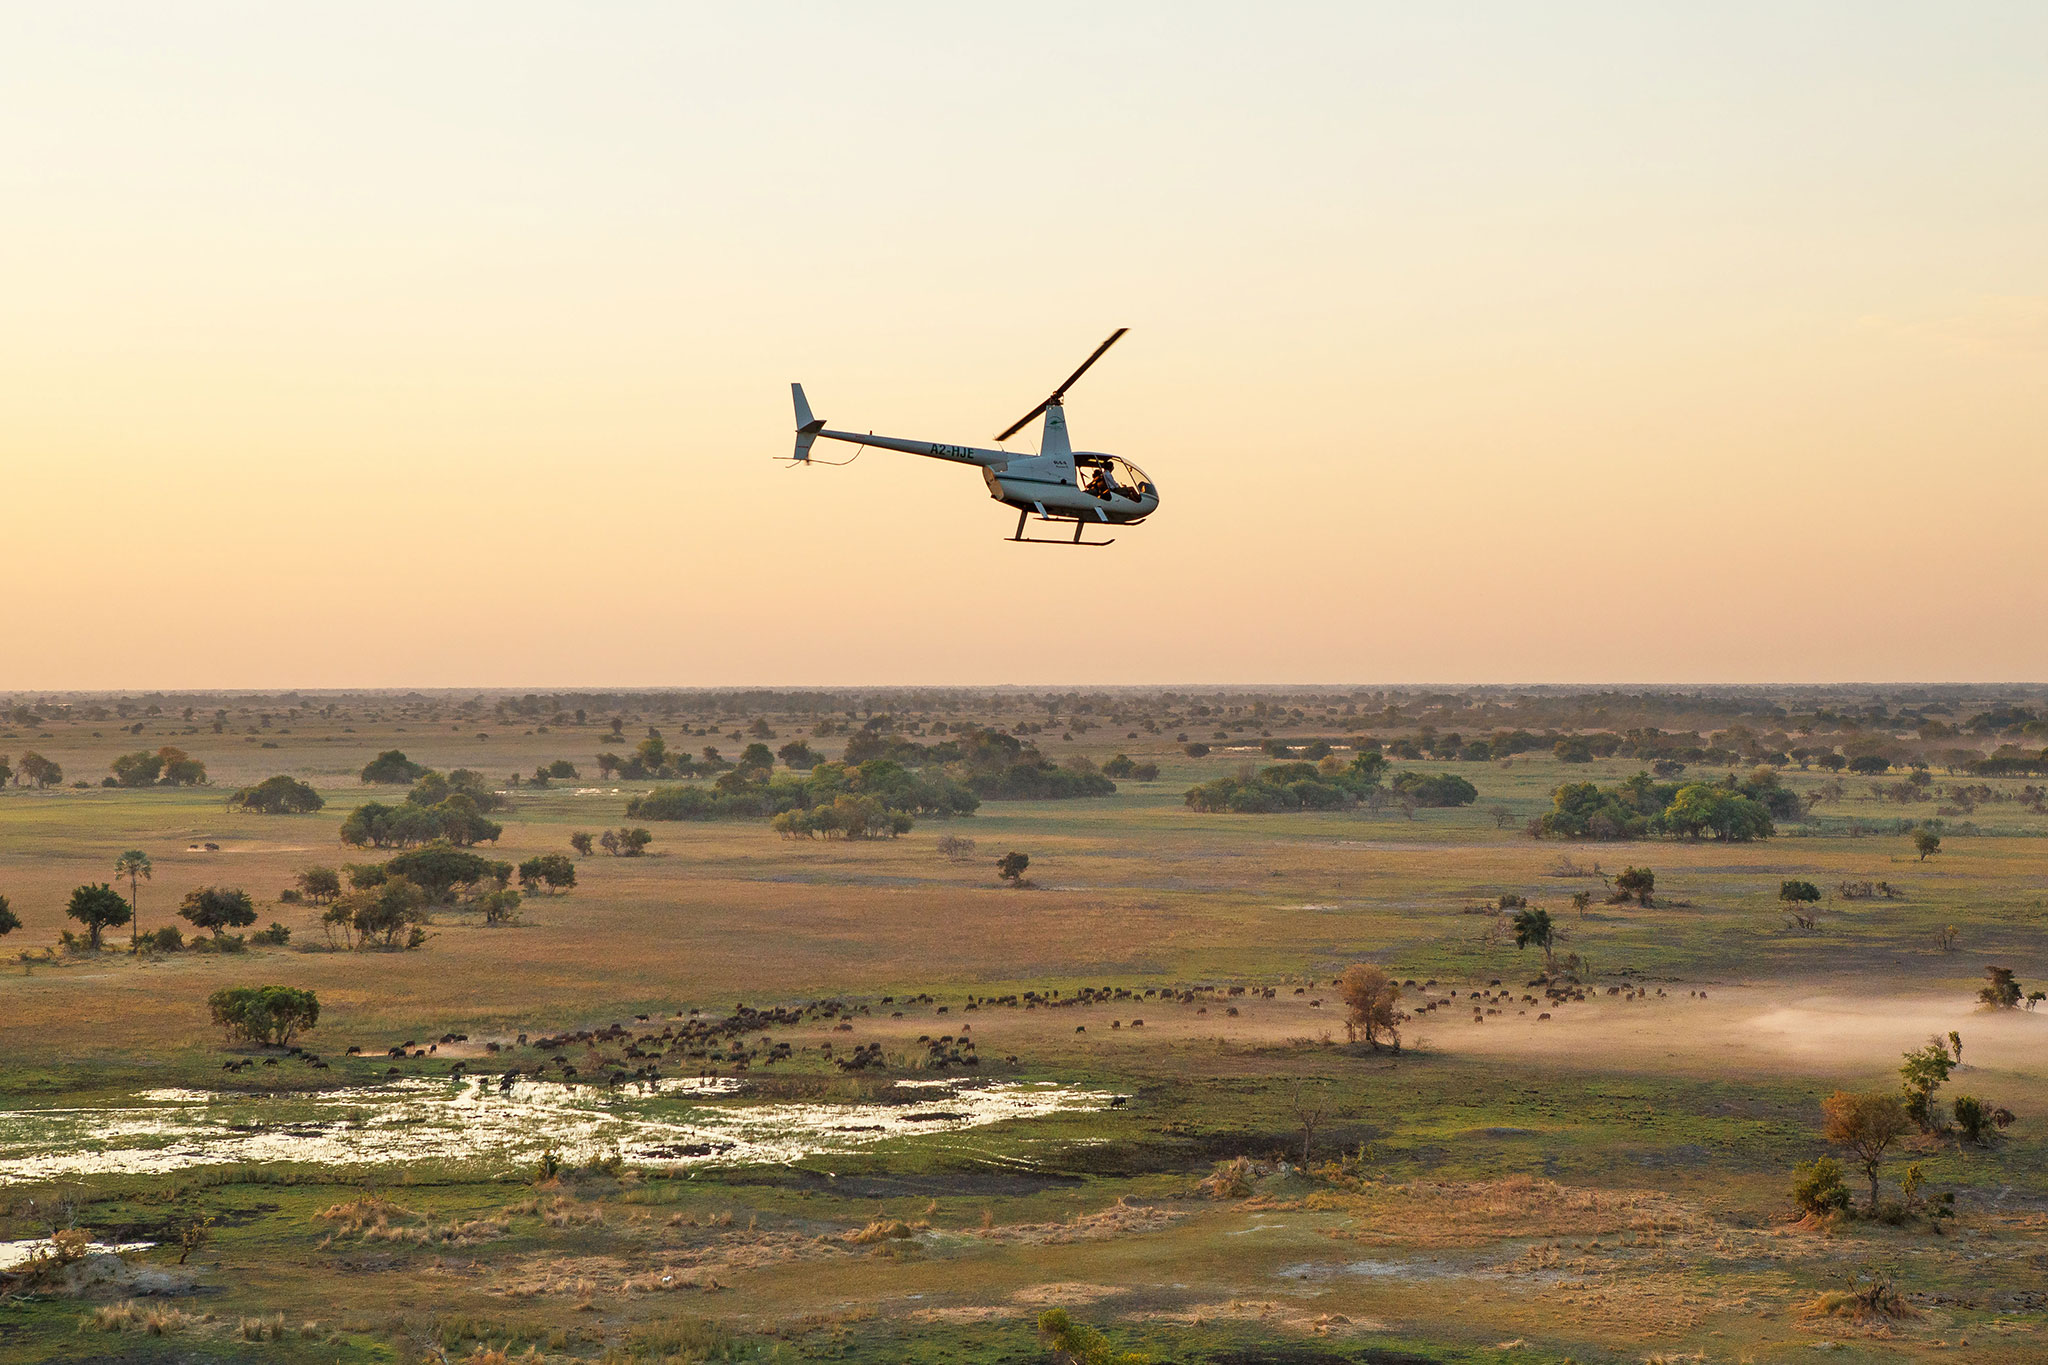 camp-okavango-activities-helicopter-flight.jpg